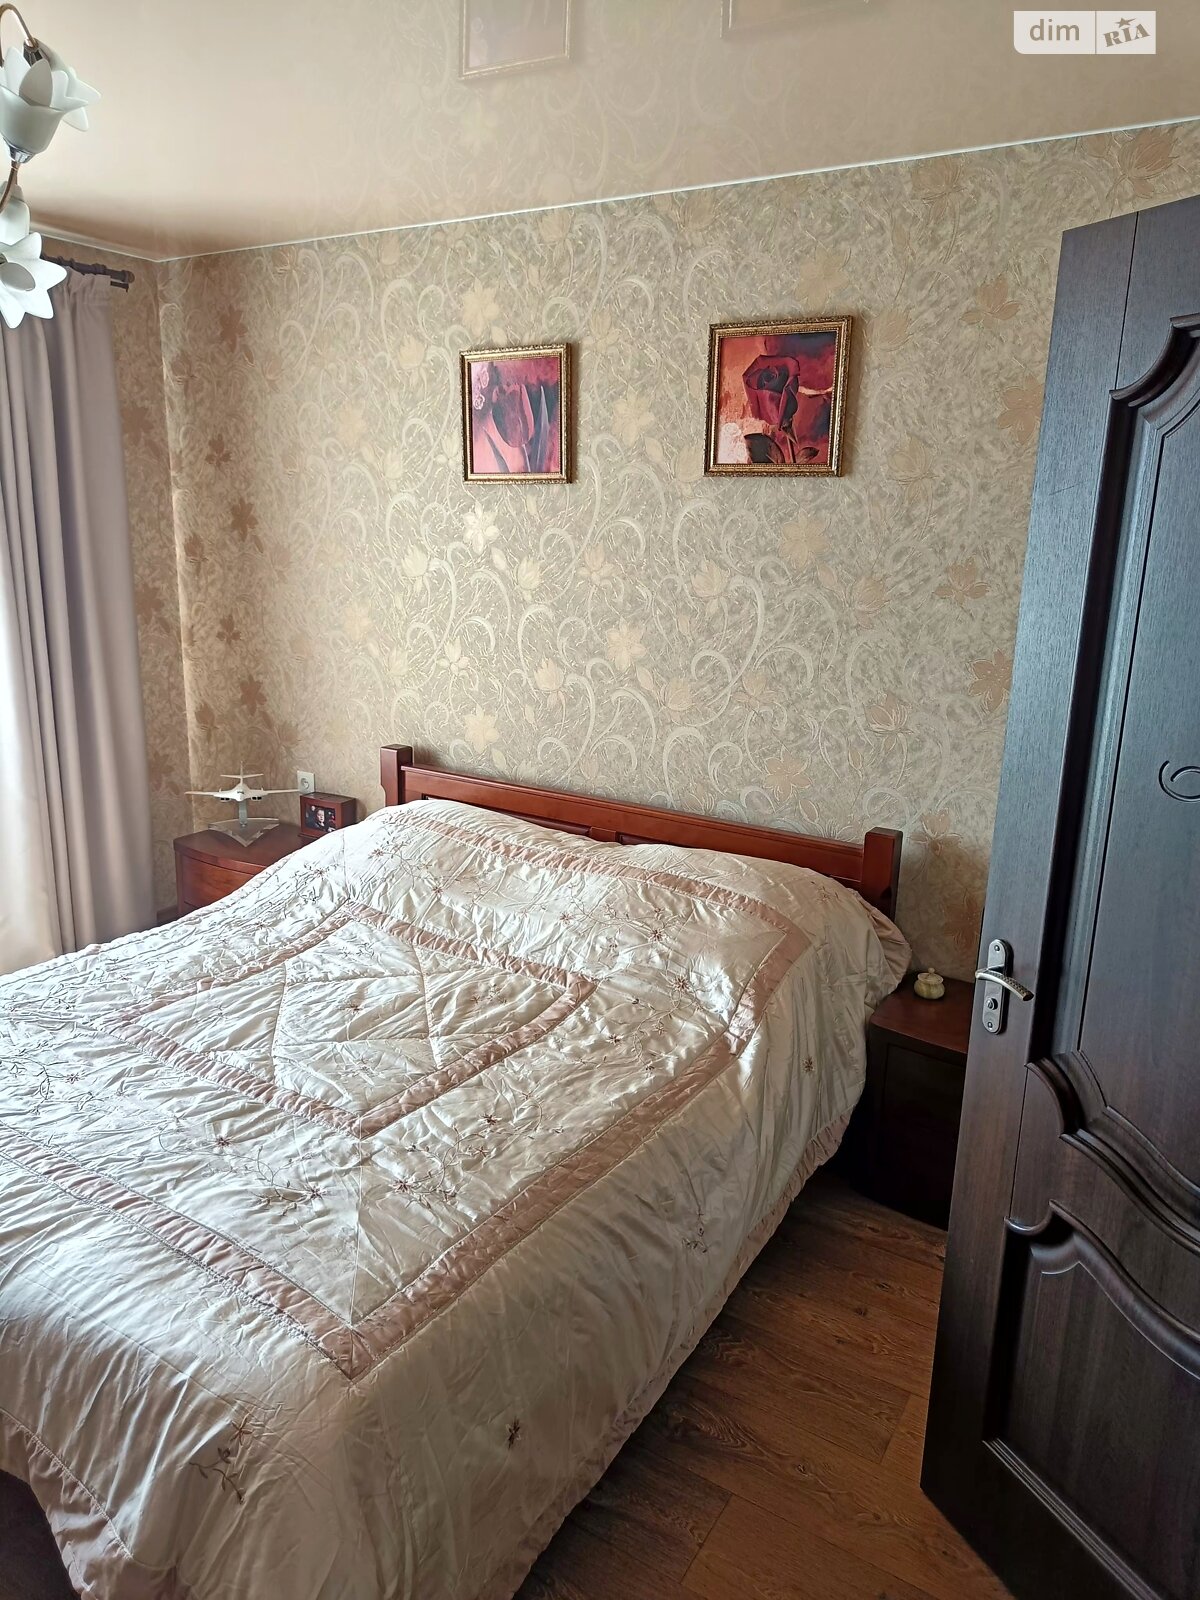 Продажа двухкомнатной квартиры в Полтаве, на ул. Героев Украины, район Сады 1 фото 1